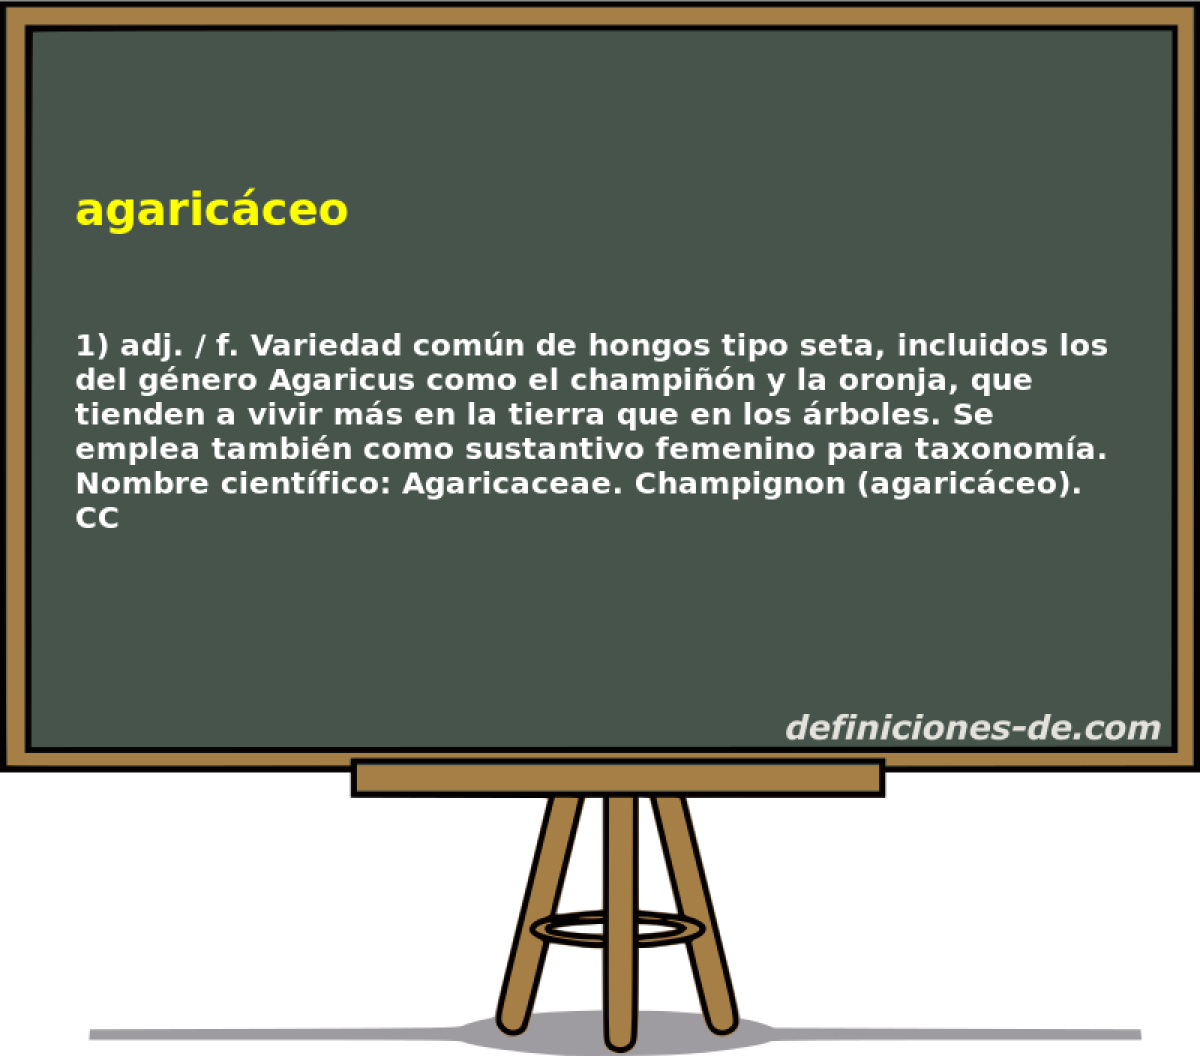 agaricceo 